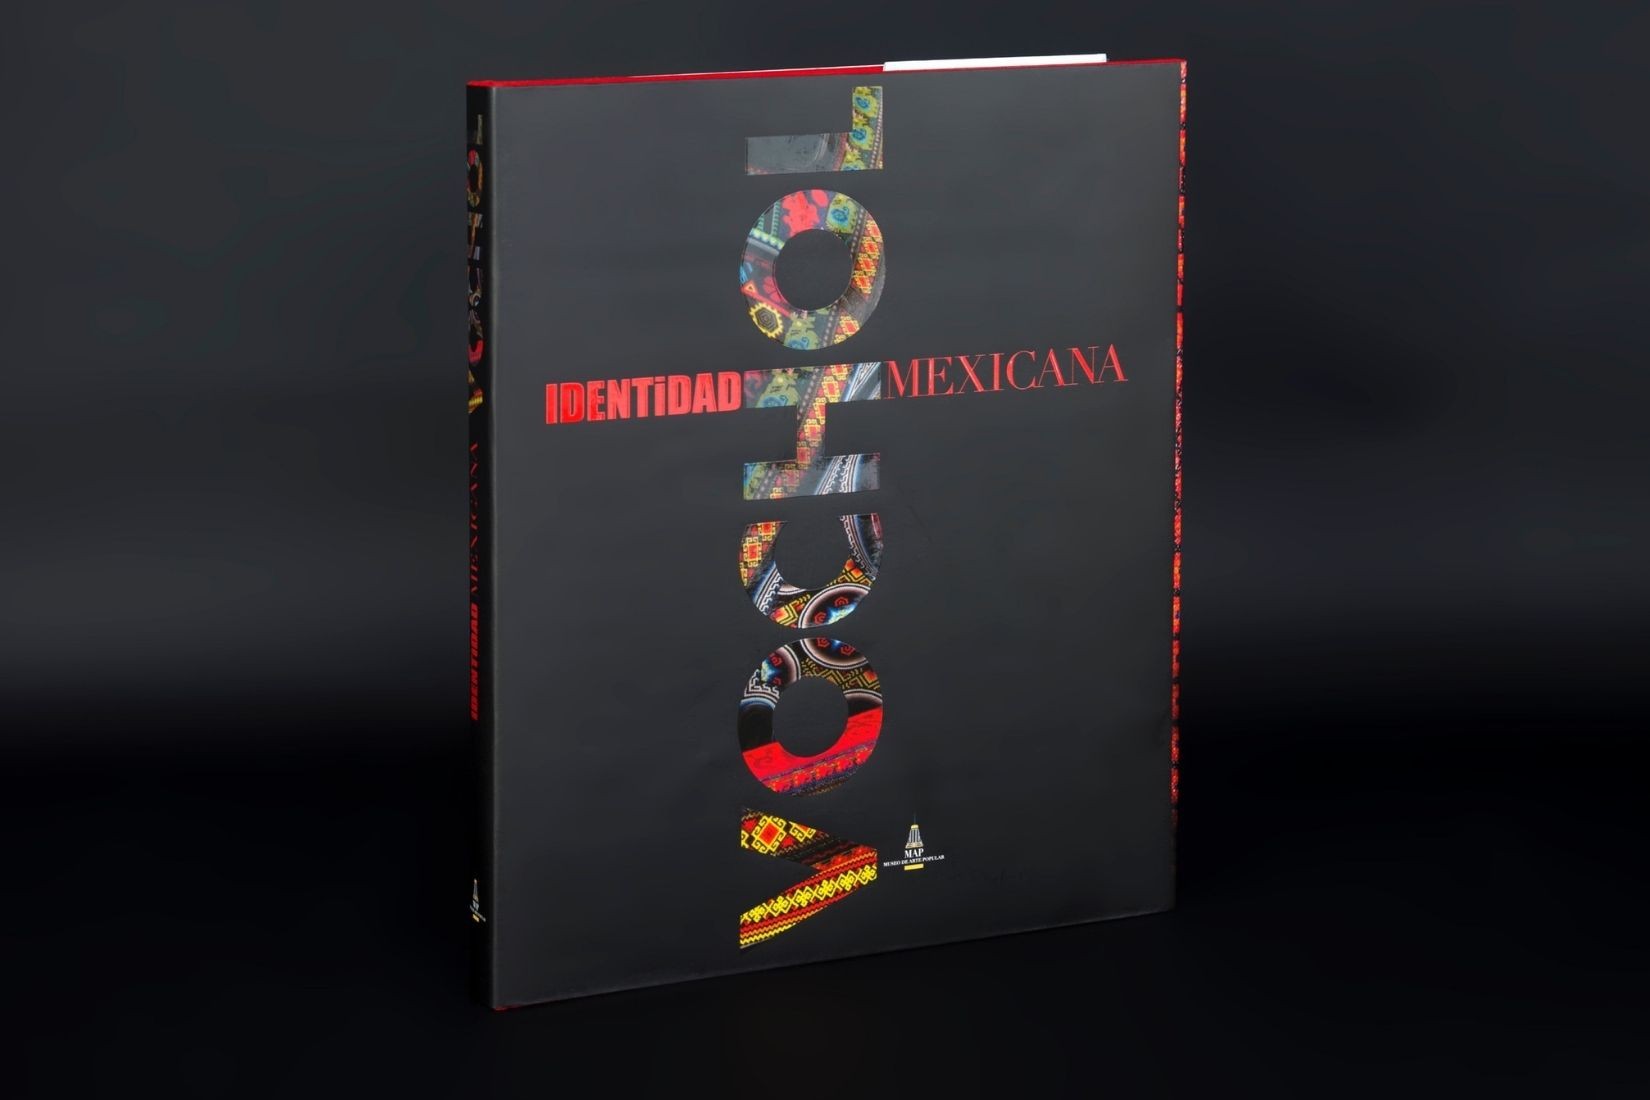 Portada de libro Vochol: Identidad Mexicana. Editado por Condé Nast México y Latinoamérica y la Asociación de AmigosMAP. 2014. (Foto: Jasso).